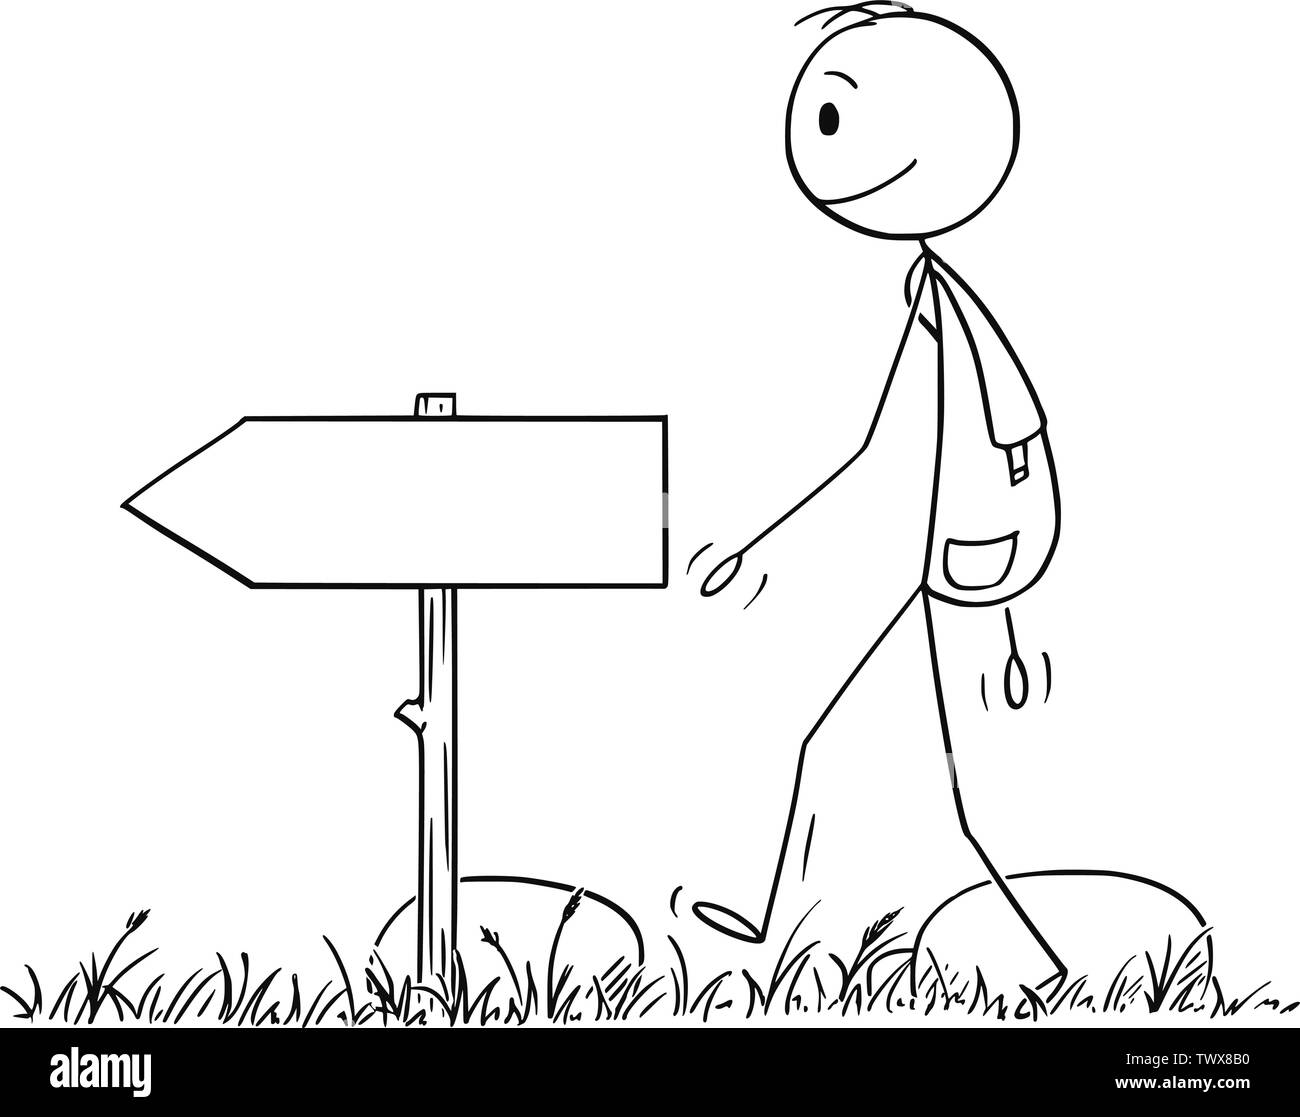 Vector cartoon stick figura disegno illustrazione concettuale di un escursionista o uomo con zaino escursionismo a piedi o su avventura nella natura. Freccia vuota segno è vicino a. Illustrazione Vettoriale